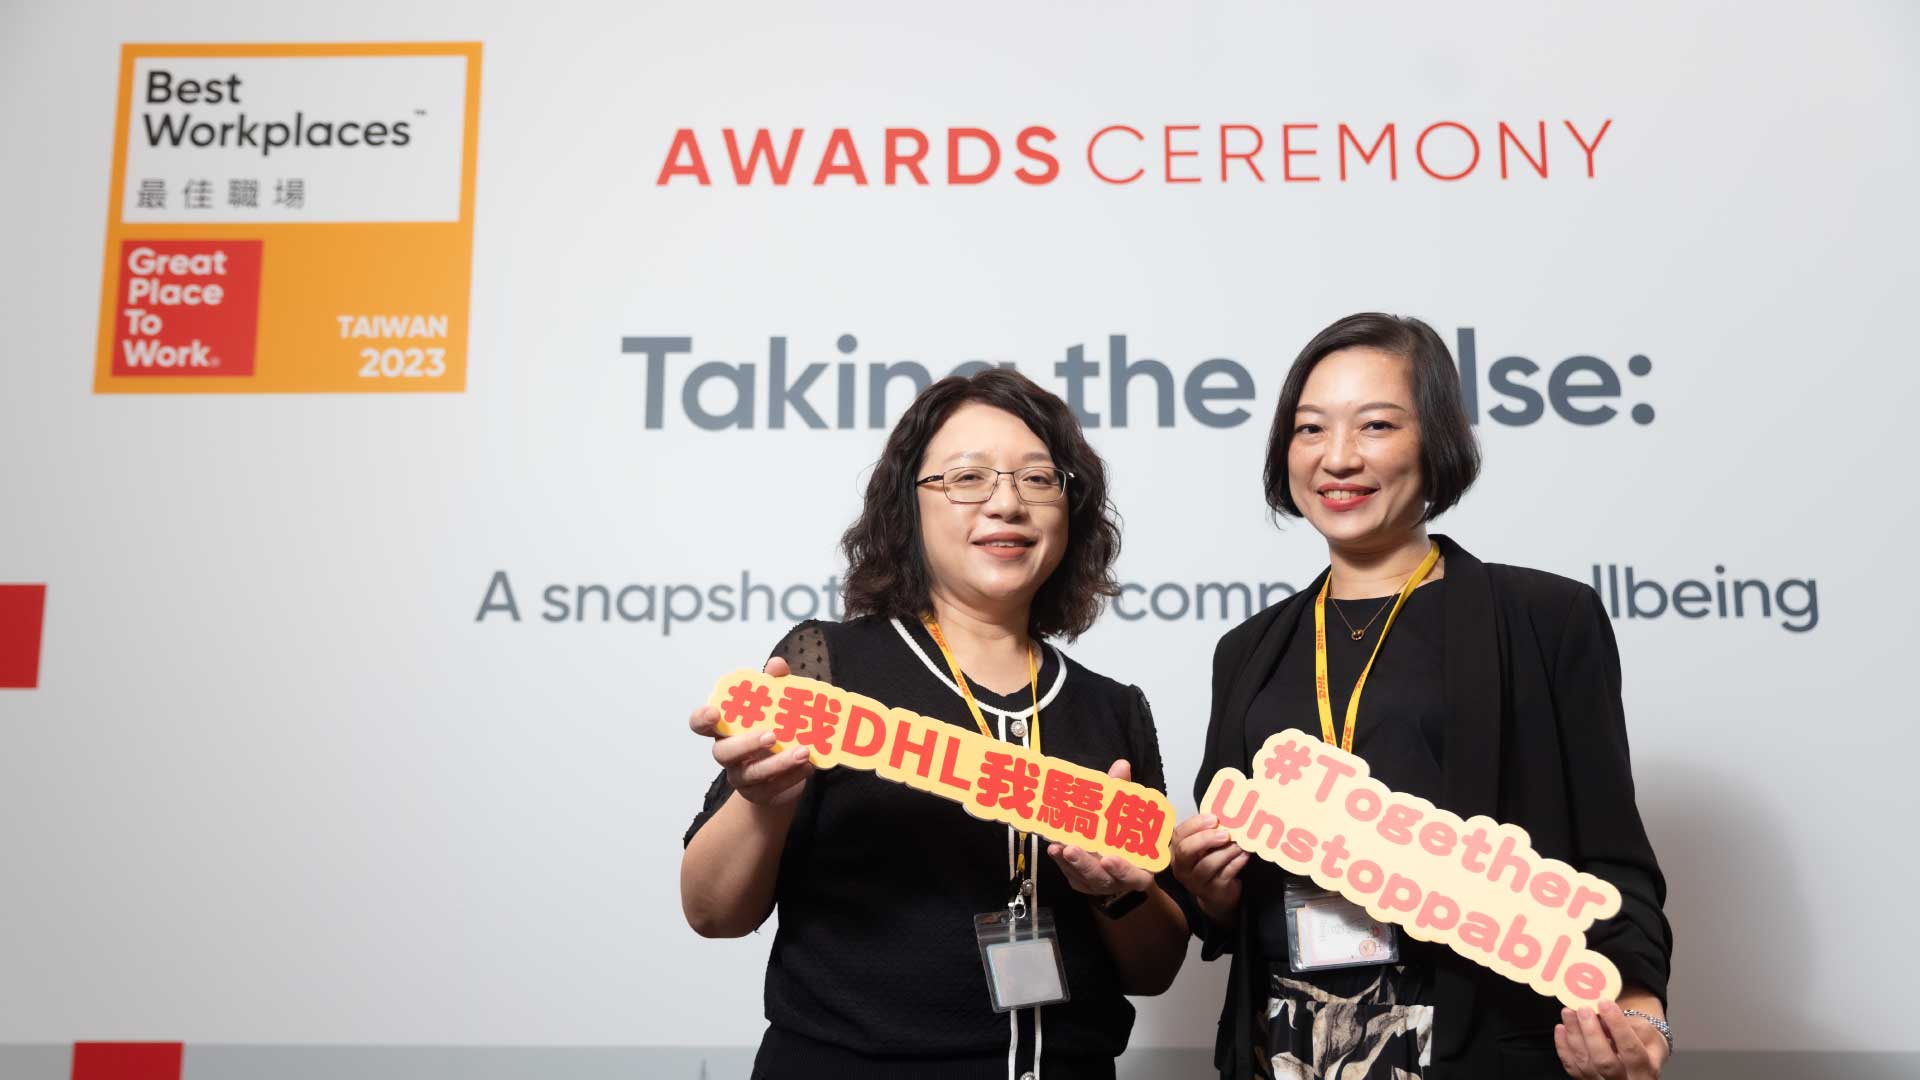 Awards-Ceremony-Taking-the-pulse-Taiwan-13.jpg